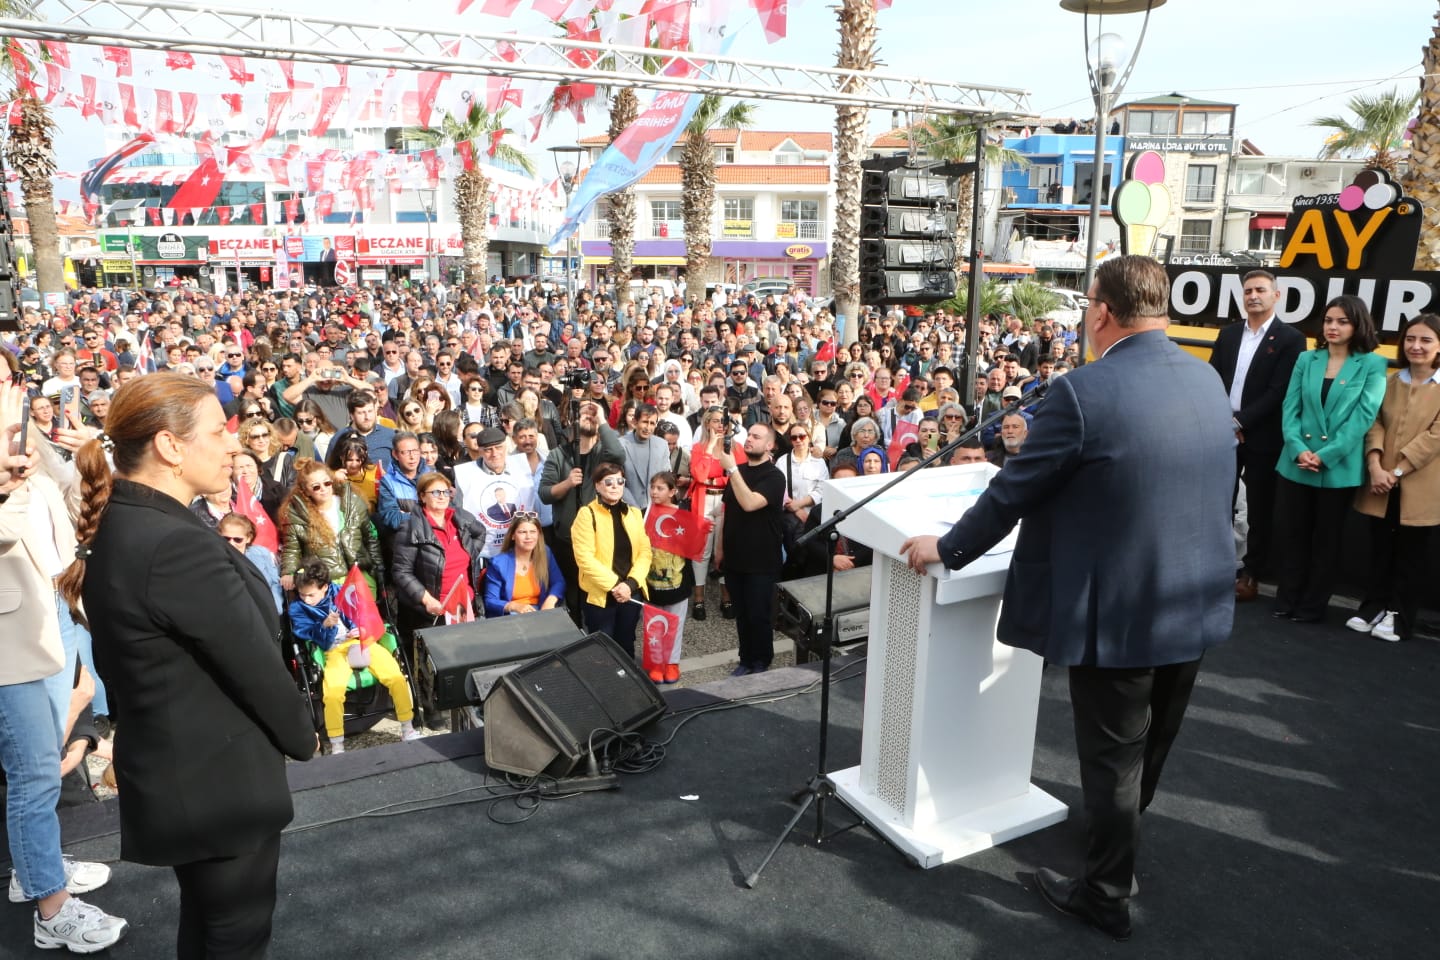 seferihisar belediyesi İzmir Seferihisar’da İyi Parti’den istifa eden ve aralarında İlçe Başkanı Kürşat Cebeci’nin de bulunduğu 317 kişi CHP’ye katıldı. CHP’ye katılan partililere ise rozetlerini Seferihisar Belediye Başkanı ve Belediye Başkan Adayı İsmail Yetişkin, CHP Genel Başkan Yardımcısı ve Parti Sözcüsü Deniz Yücel ile CHP Seferihisar İlçe Başkanı Rahmi Tezel Çınar taktı. CHP’ye katılacak İyi Partili kişi sayının 500’ü bulması bekleniyor.